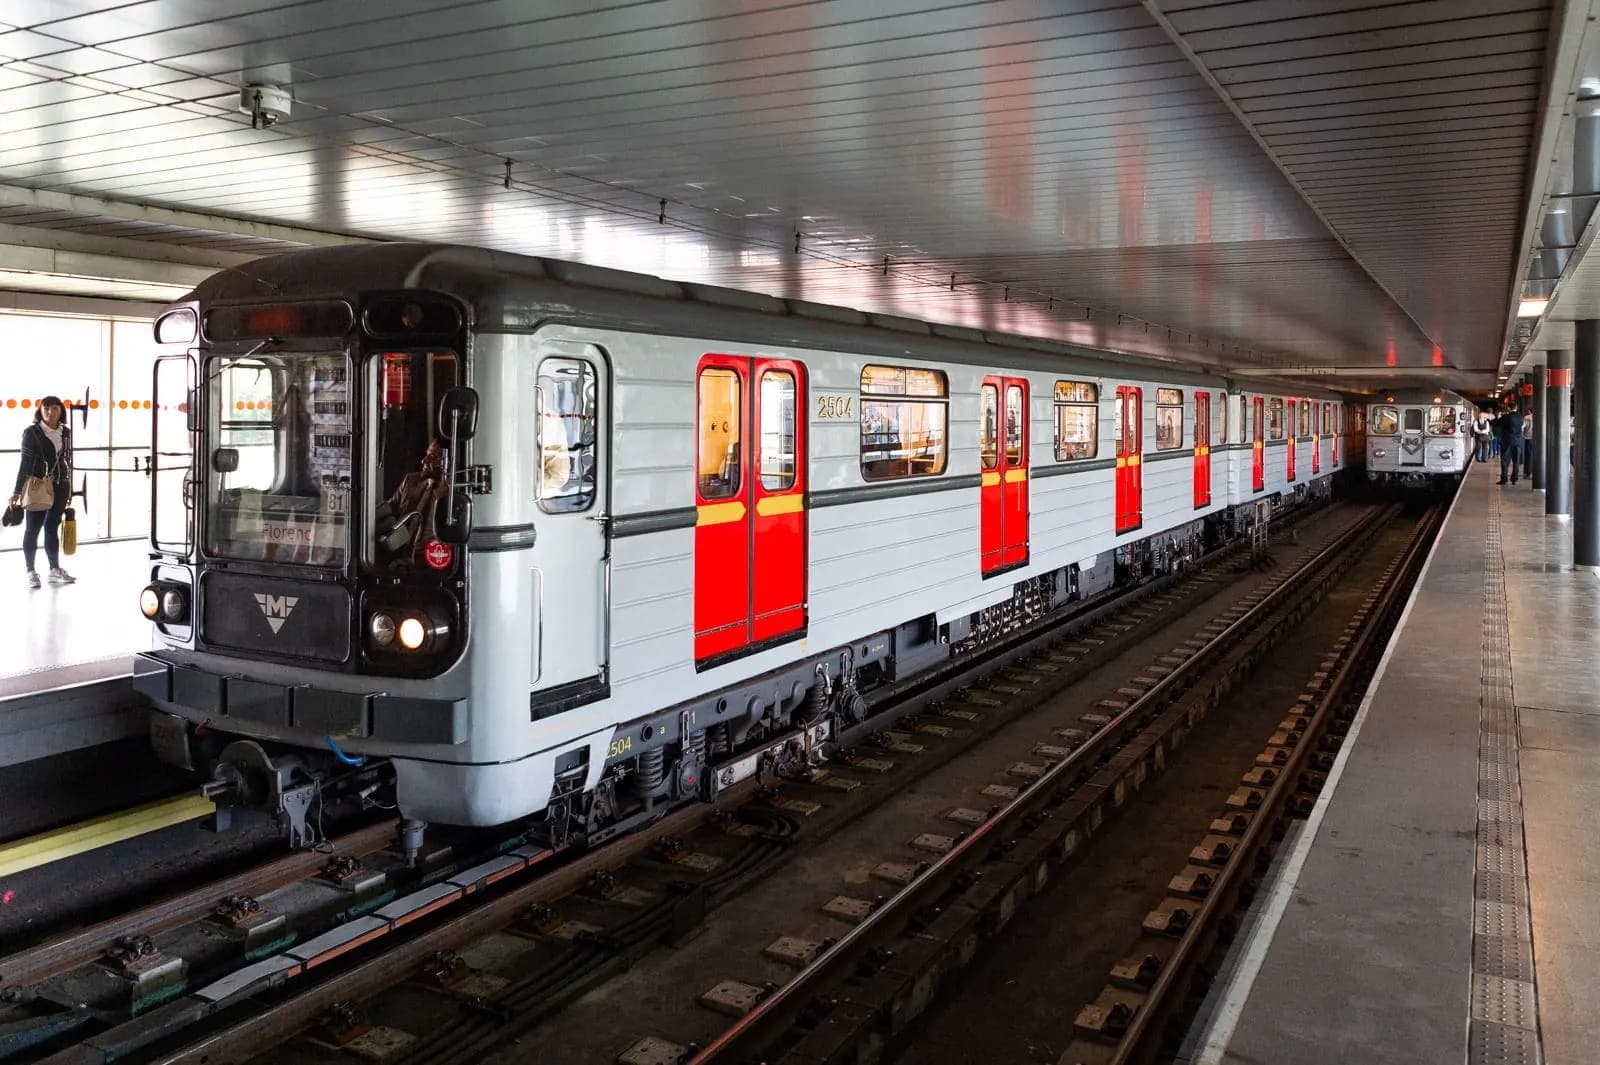 8 мая Транспортное предприятие Праги предложит пассажирам прокатиться на исторических составах метро